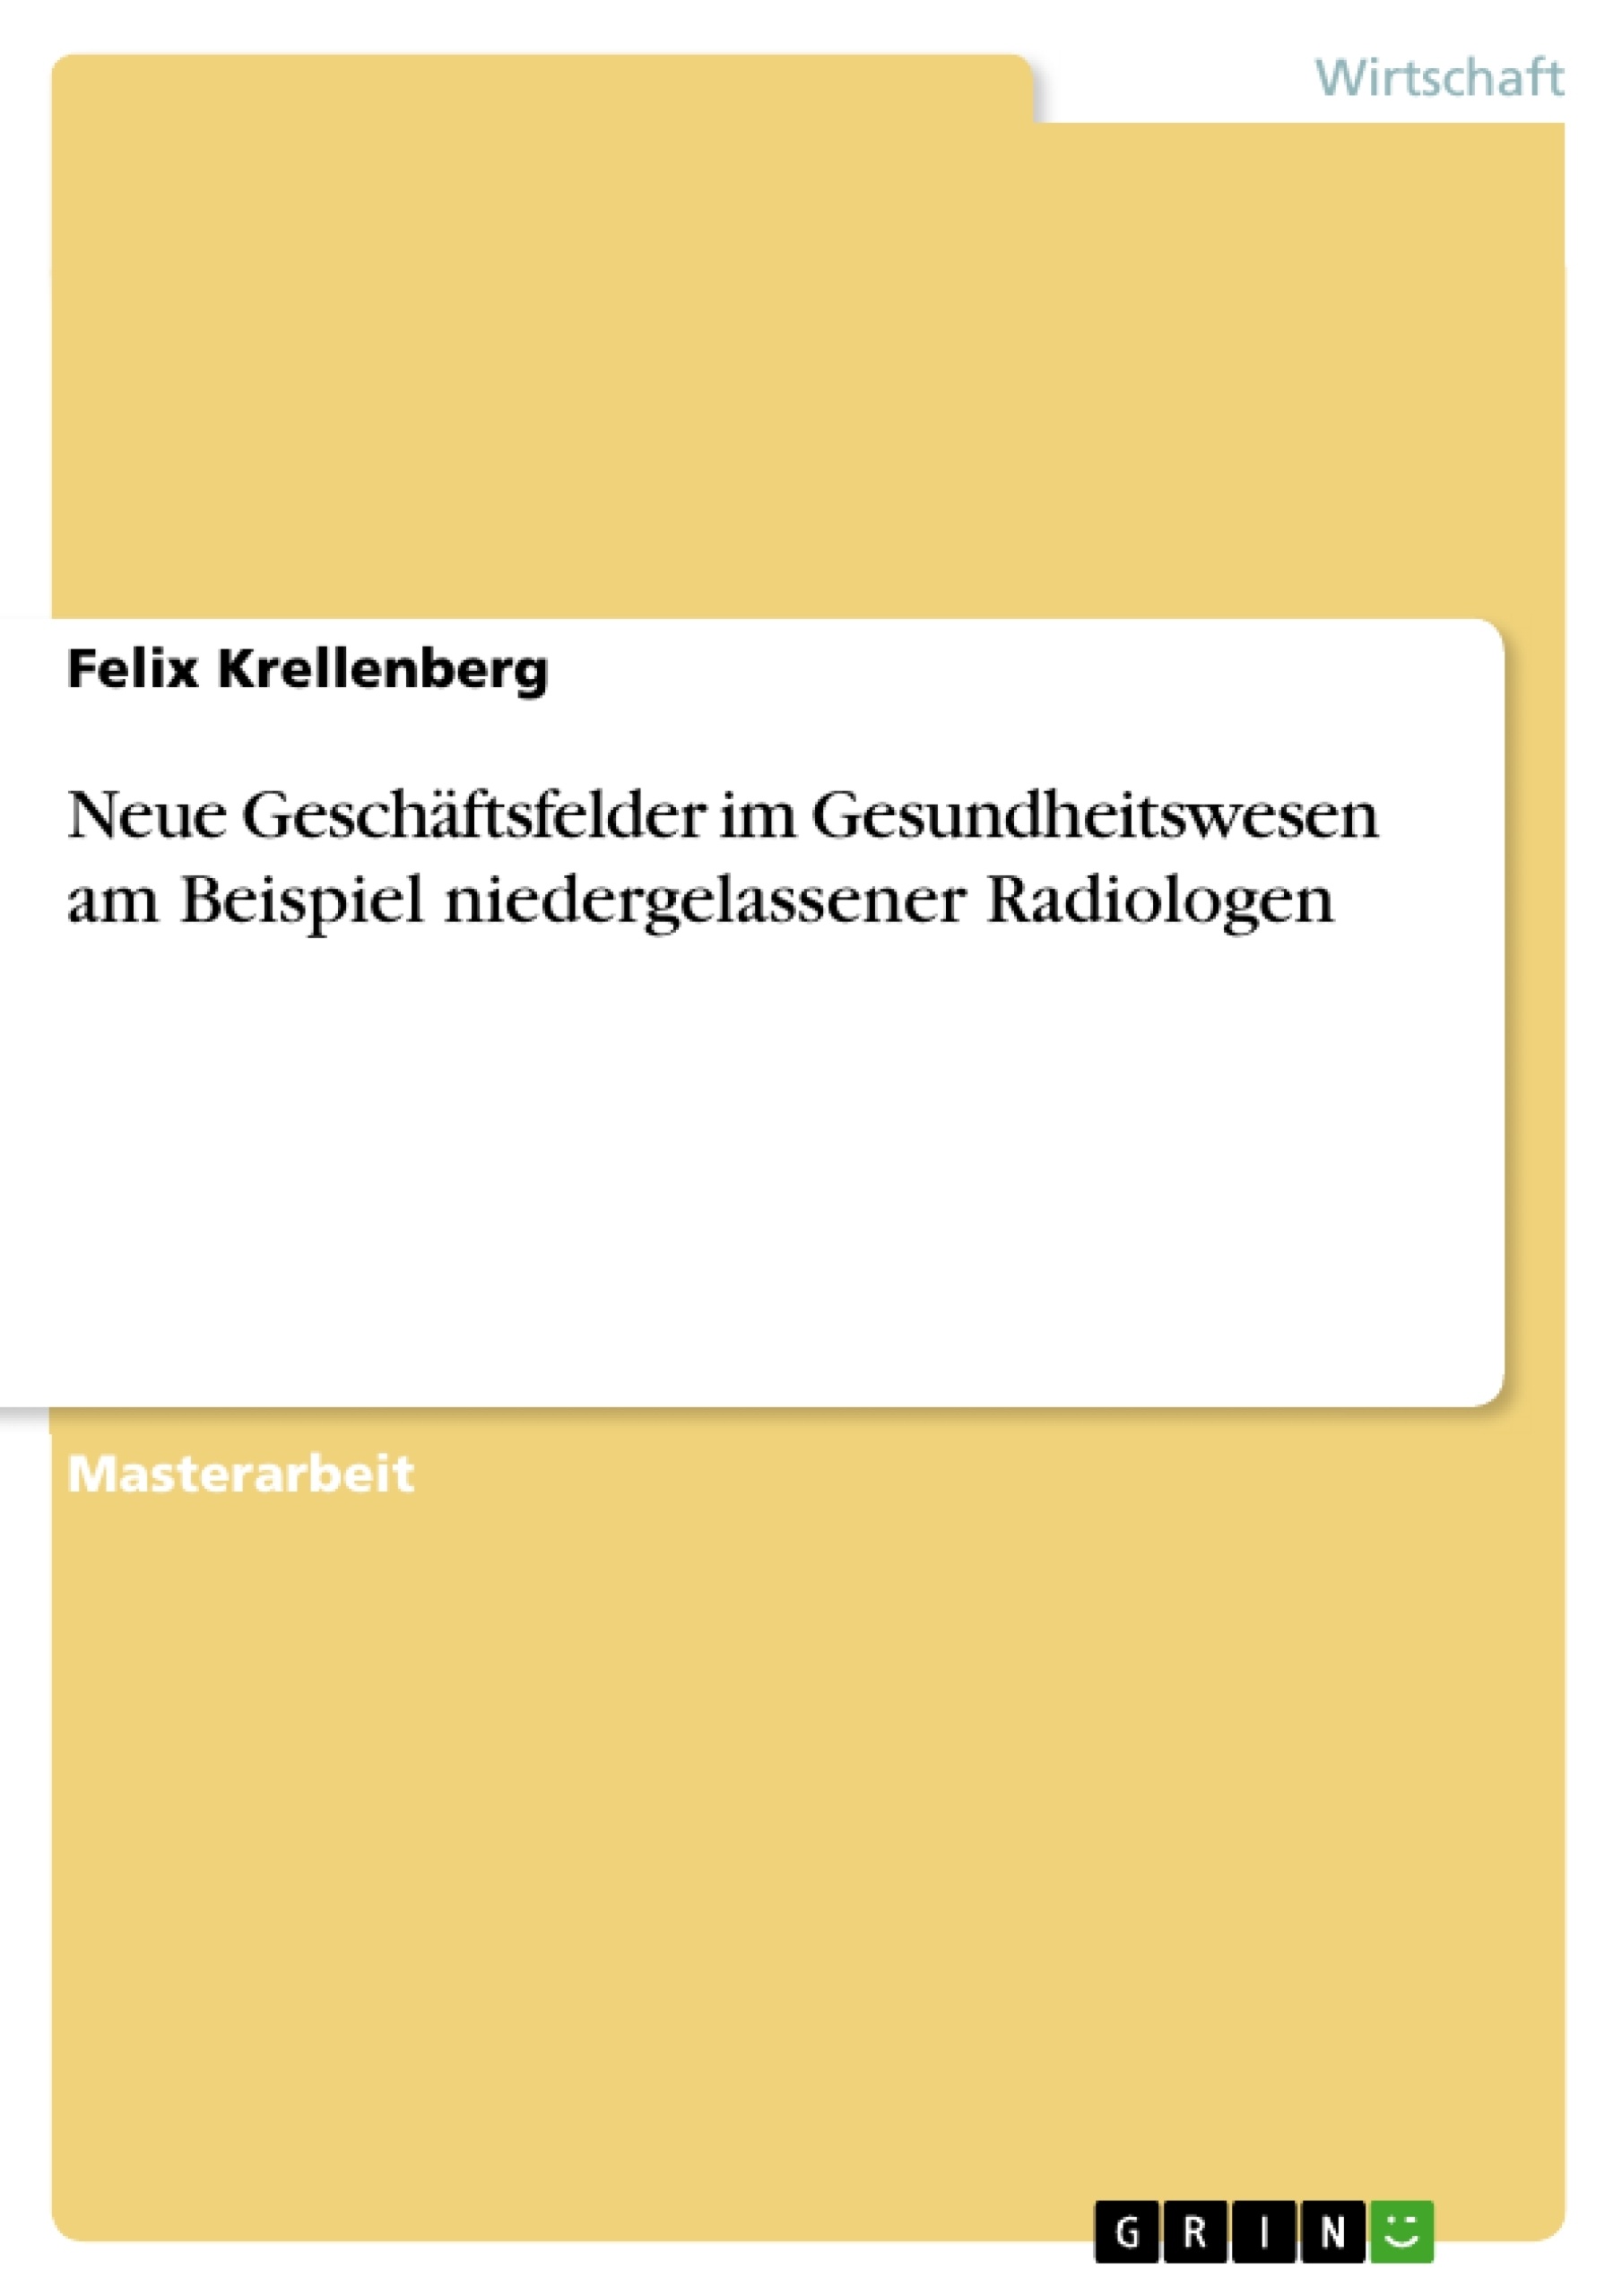 Title: Neue Geschäftsfelder im Gesundheitswesen am Beispiel niedergelassener Radiologen